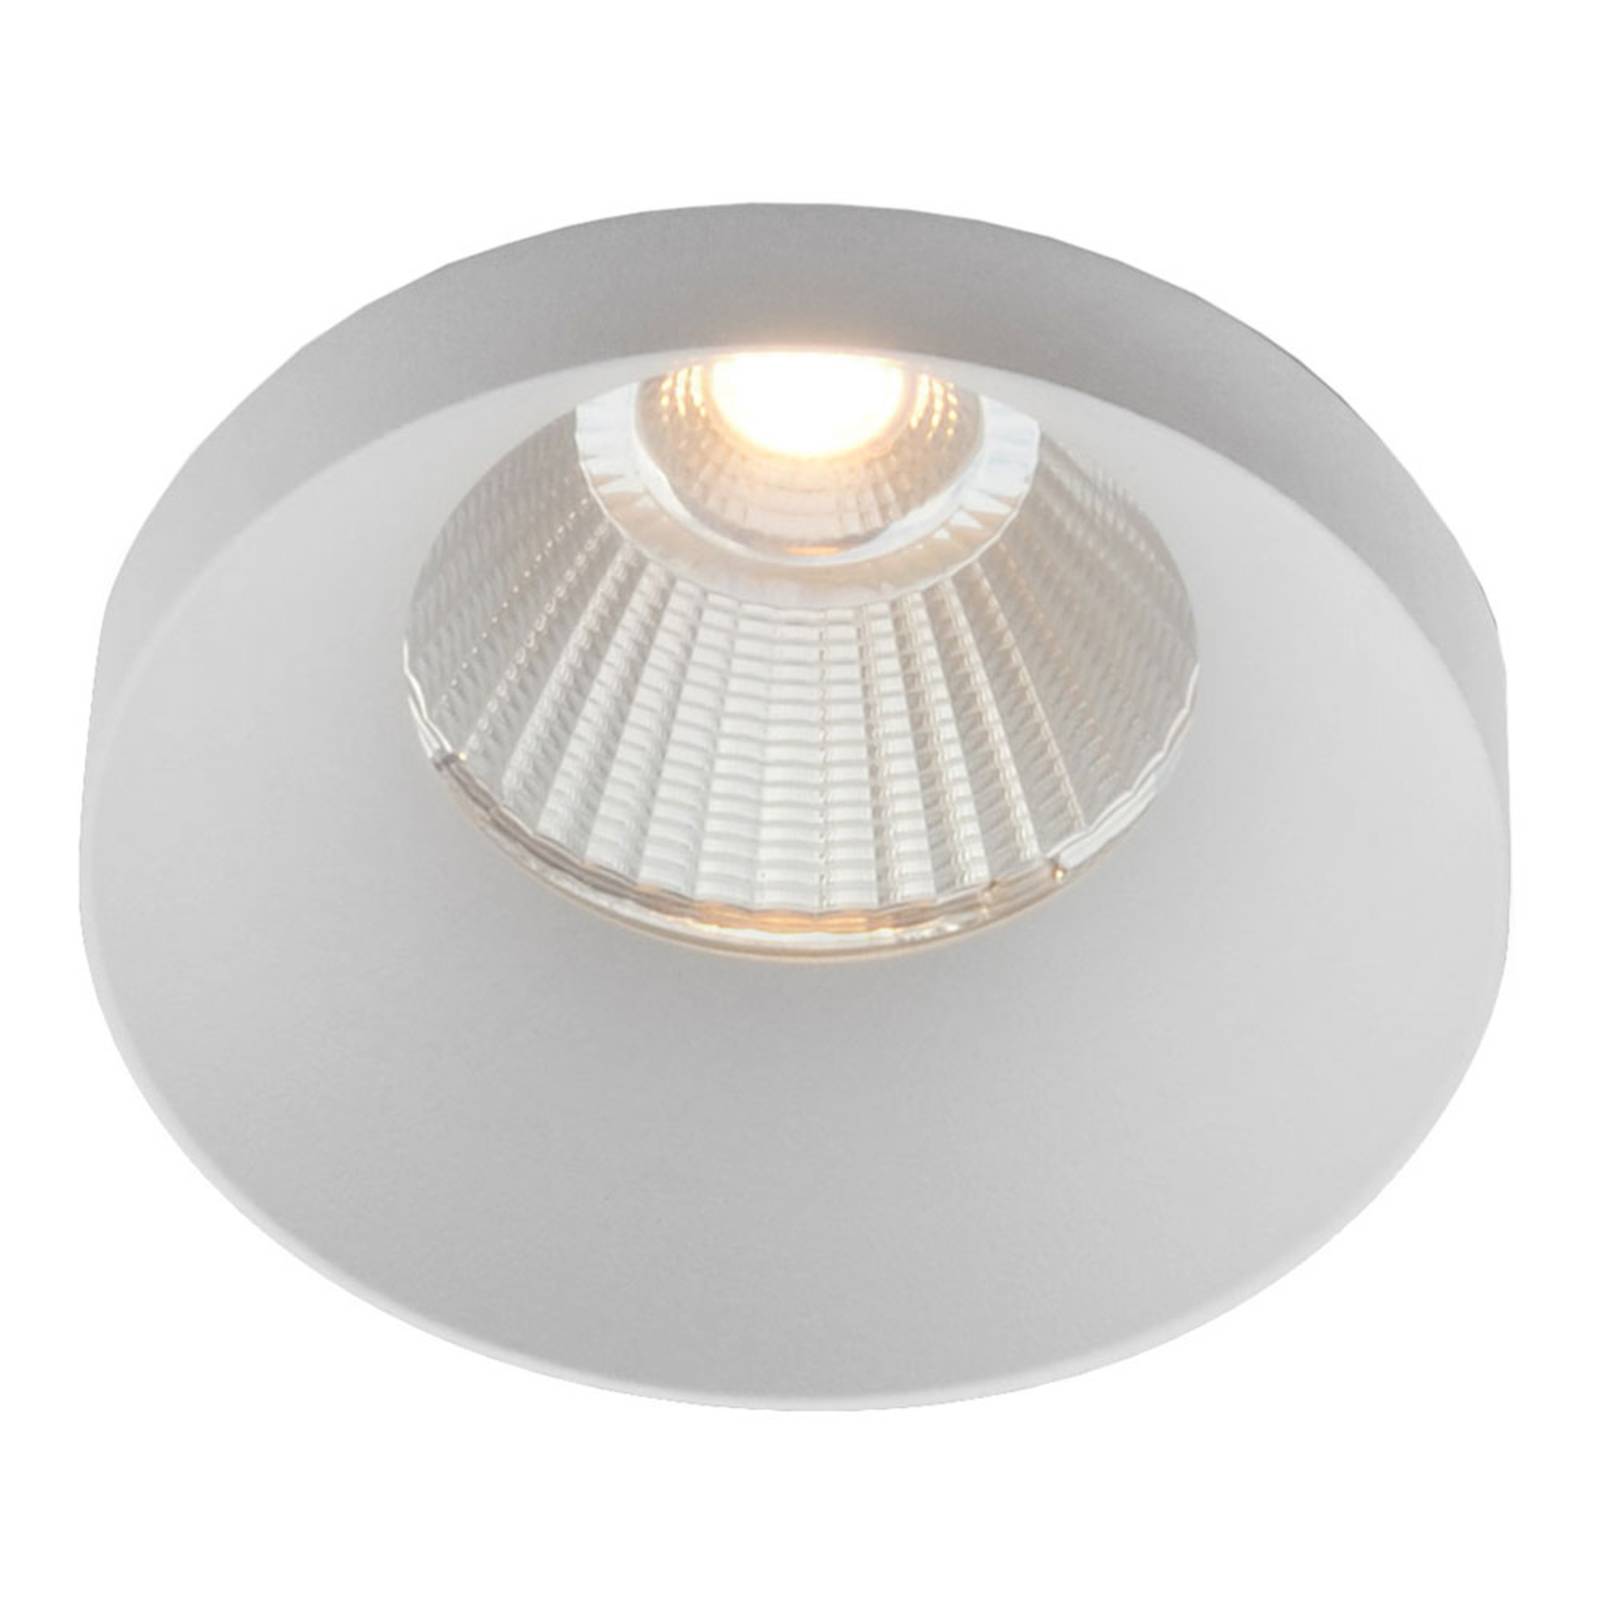 The Light Group GF design Owi Einbaulampe IP54 weiß 3.000 K